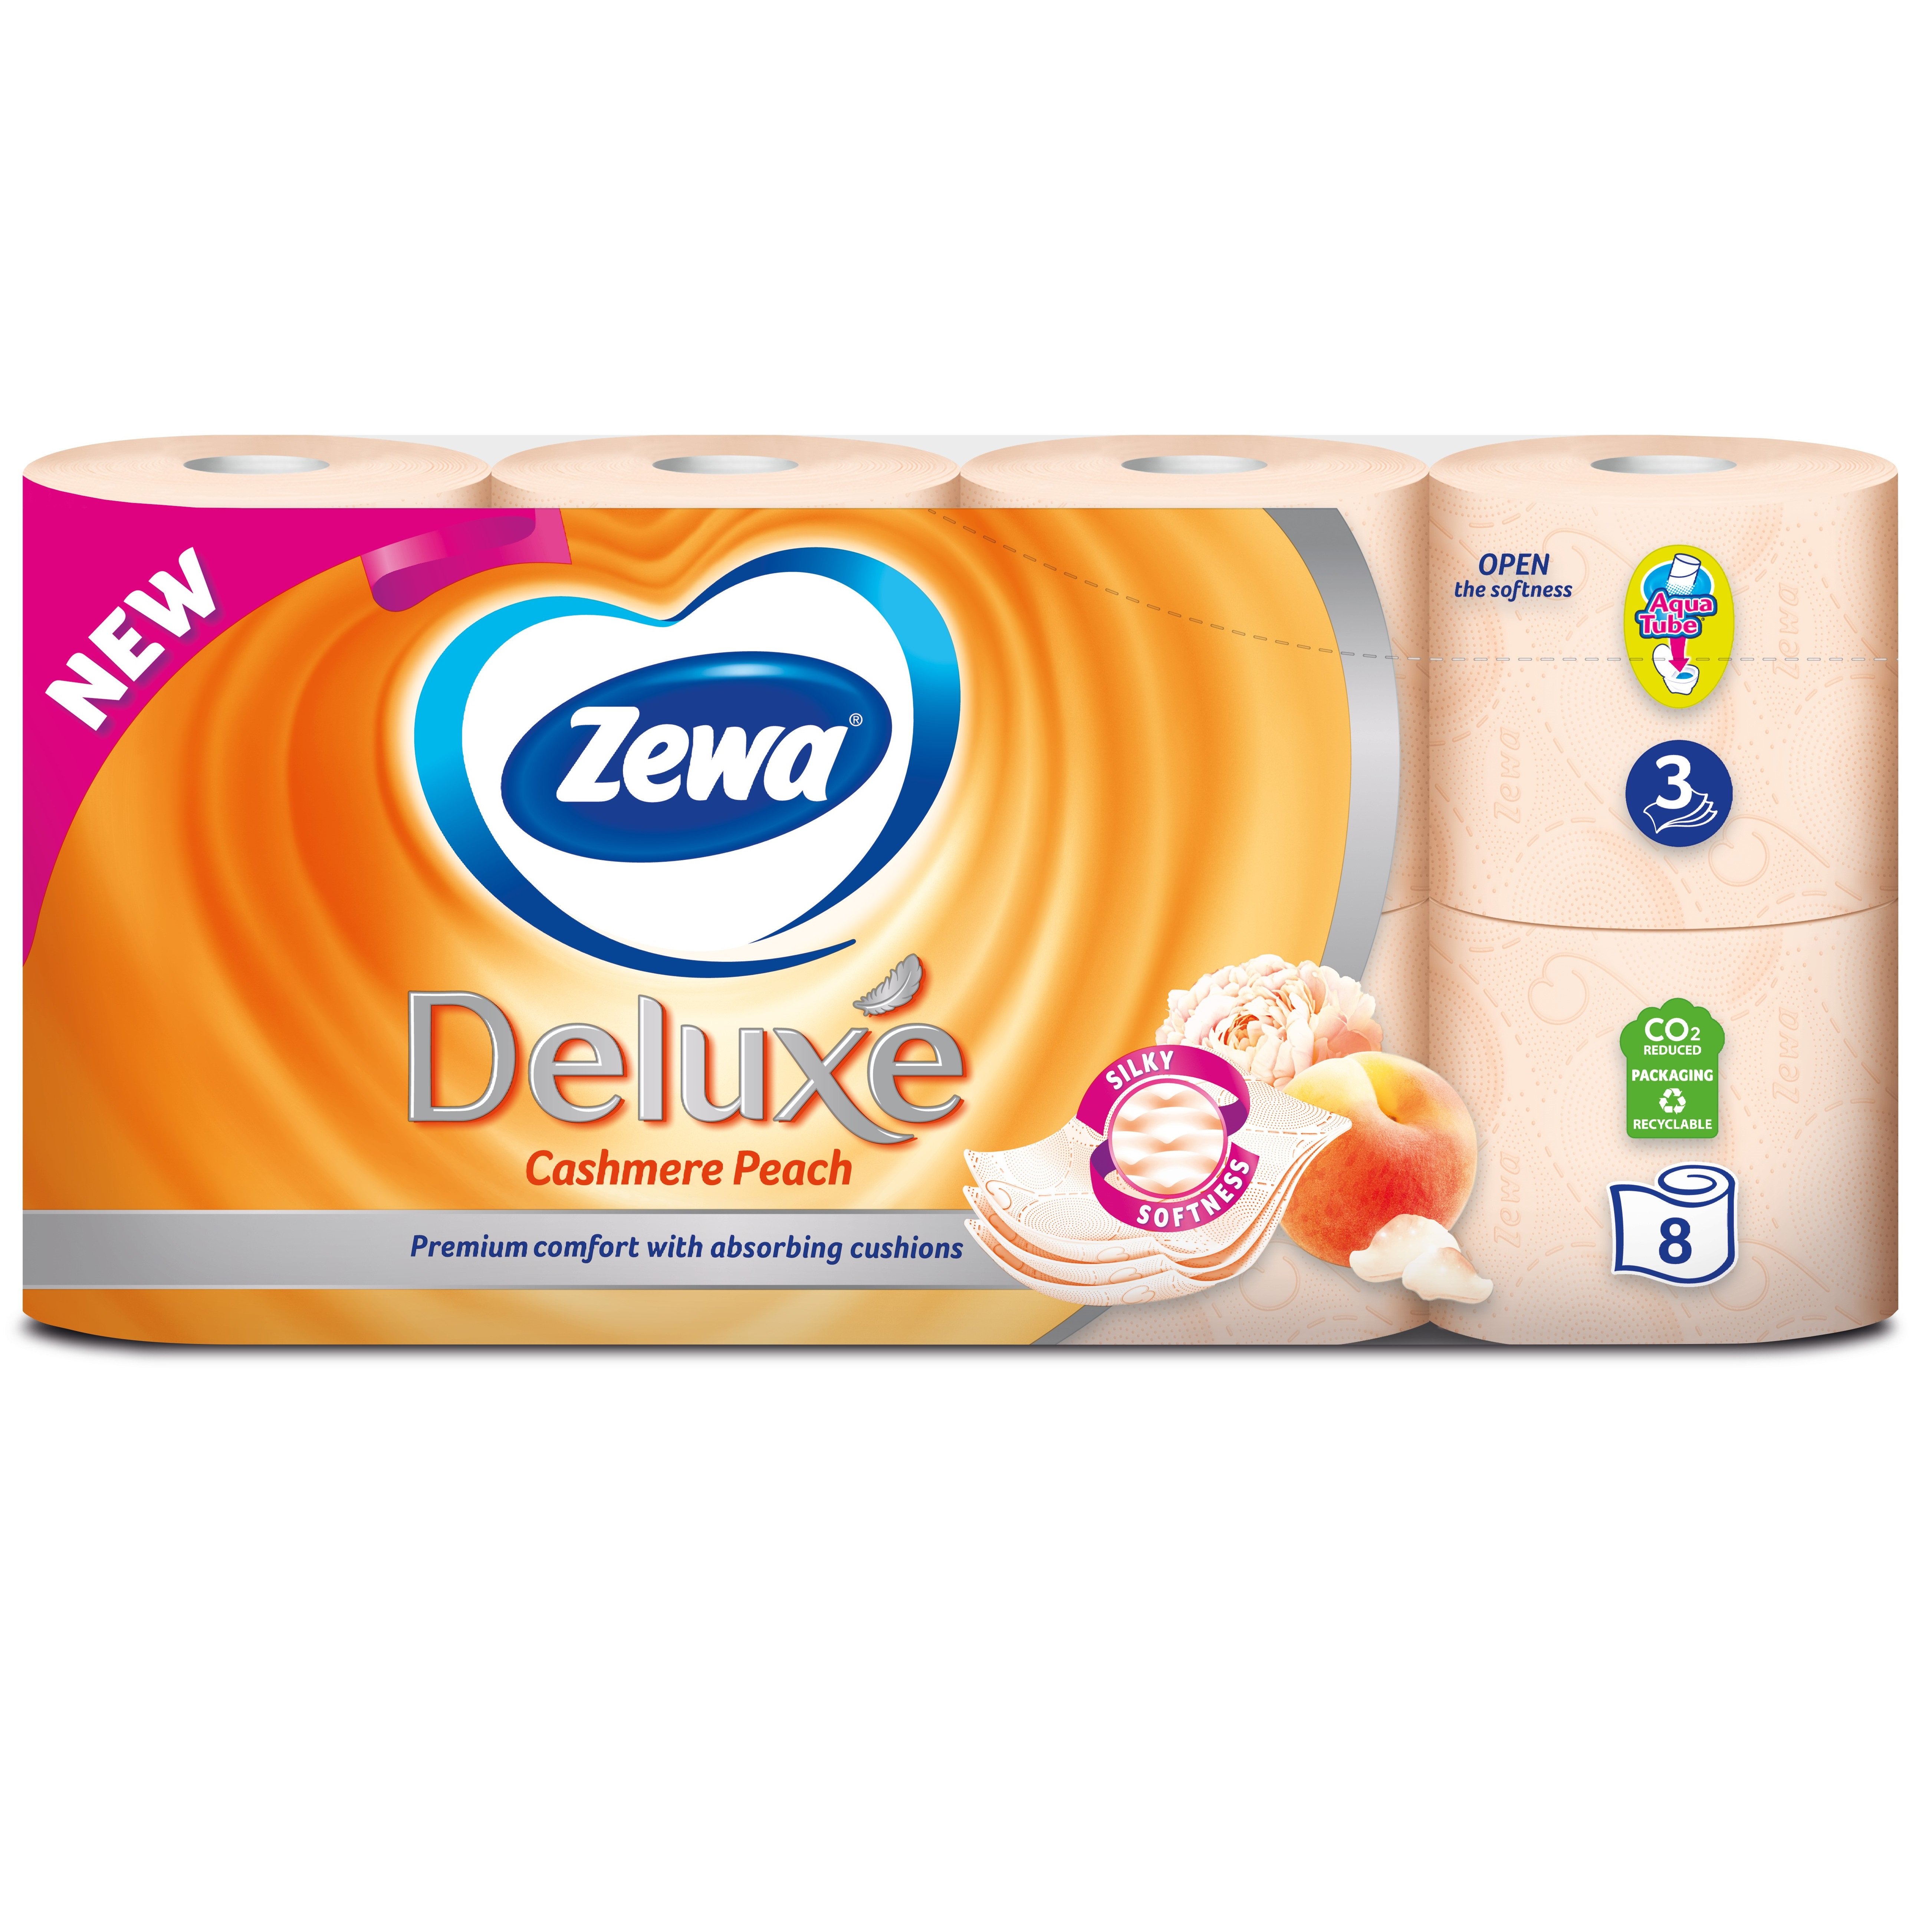 Трехслойная туалетная бумага Zewa Deluxe Cashmere Peach, персик, 8 рулонов - фото 2